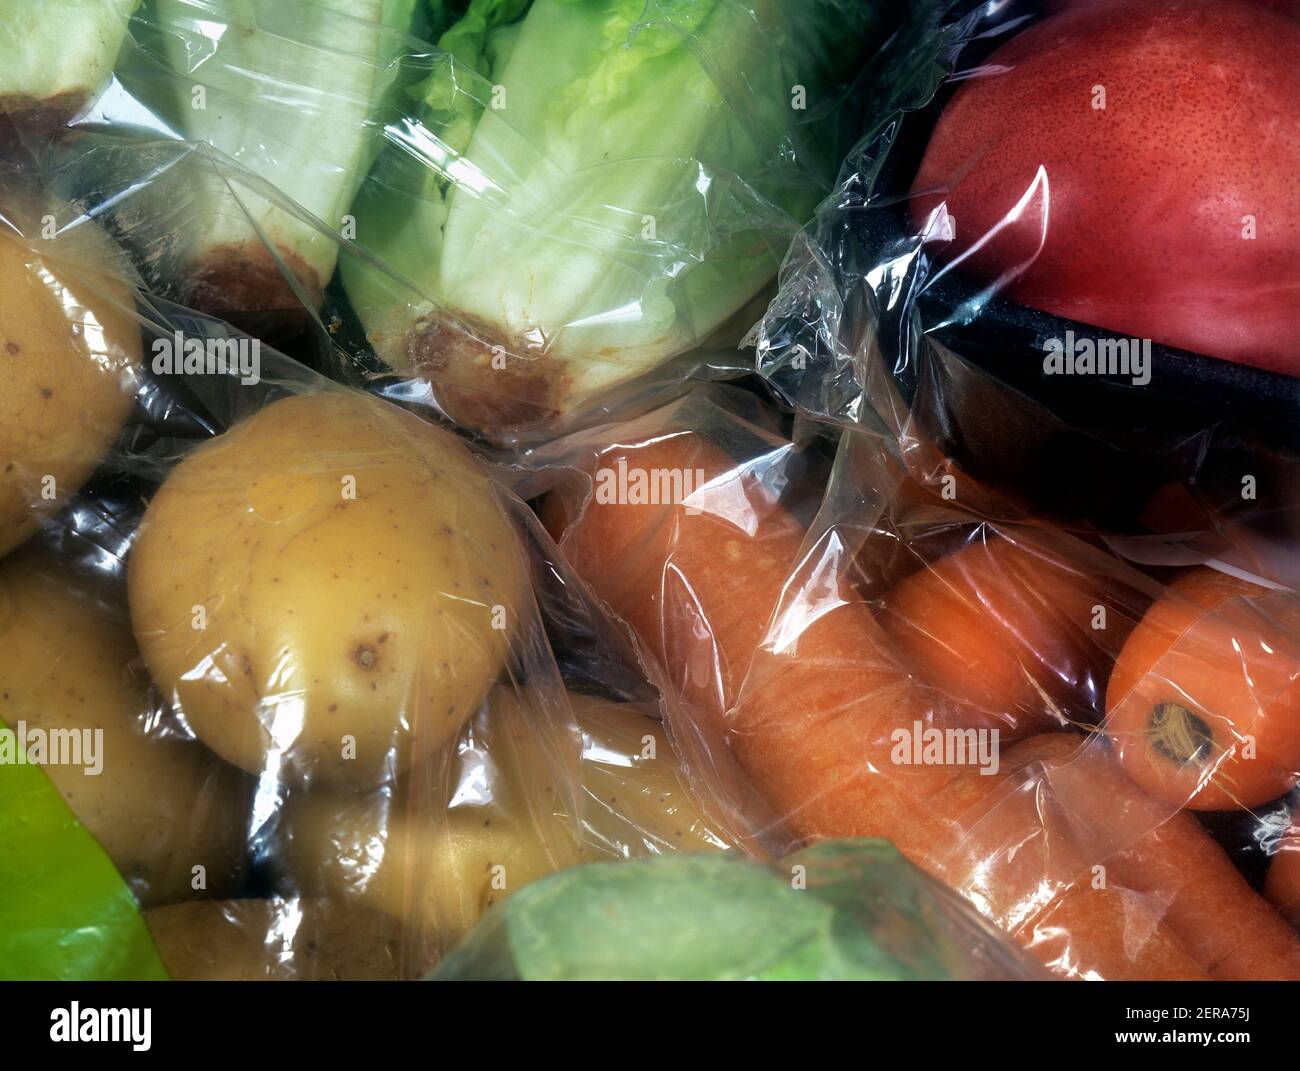 Embalaje innecesario - bolsa de plástico transparente y envoltura de celofán en verduras vendidas en un supermercado (incluyendo patatas, zanahorias y lechuga). Foto de stock